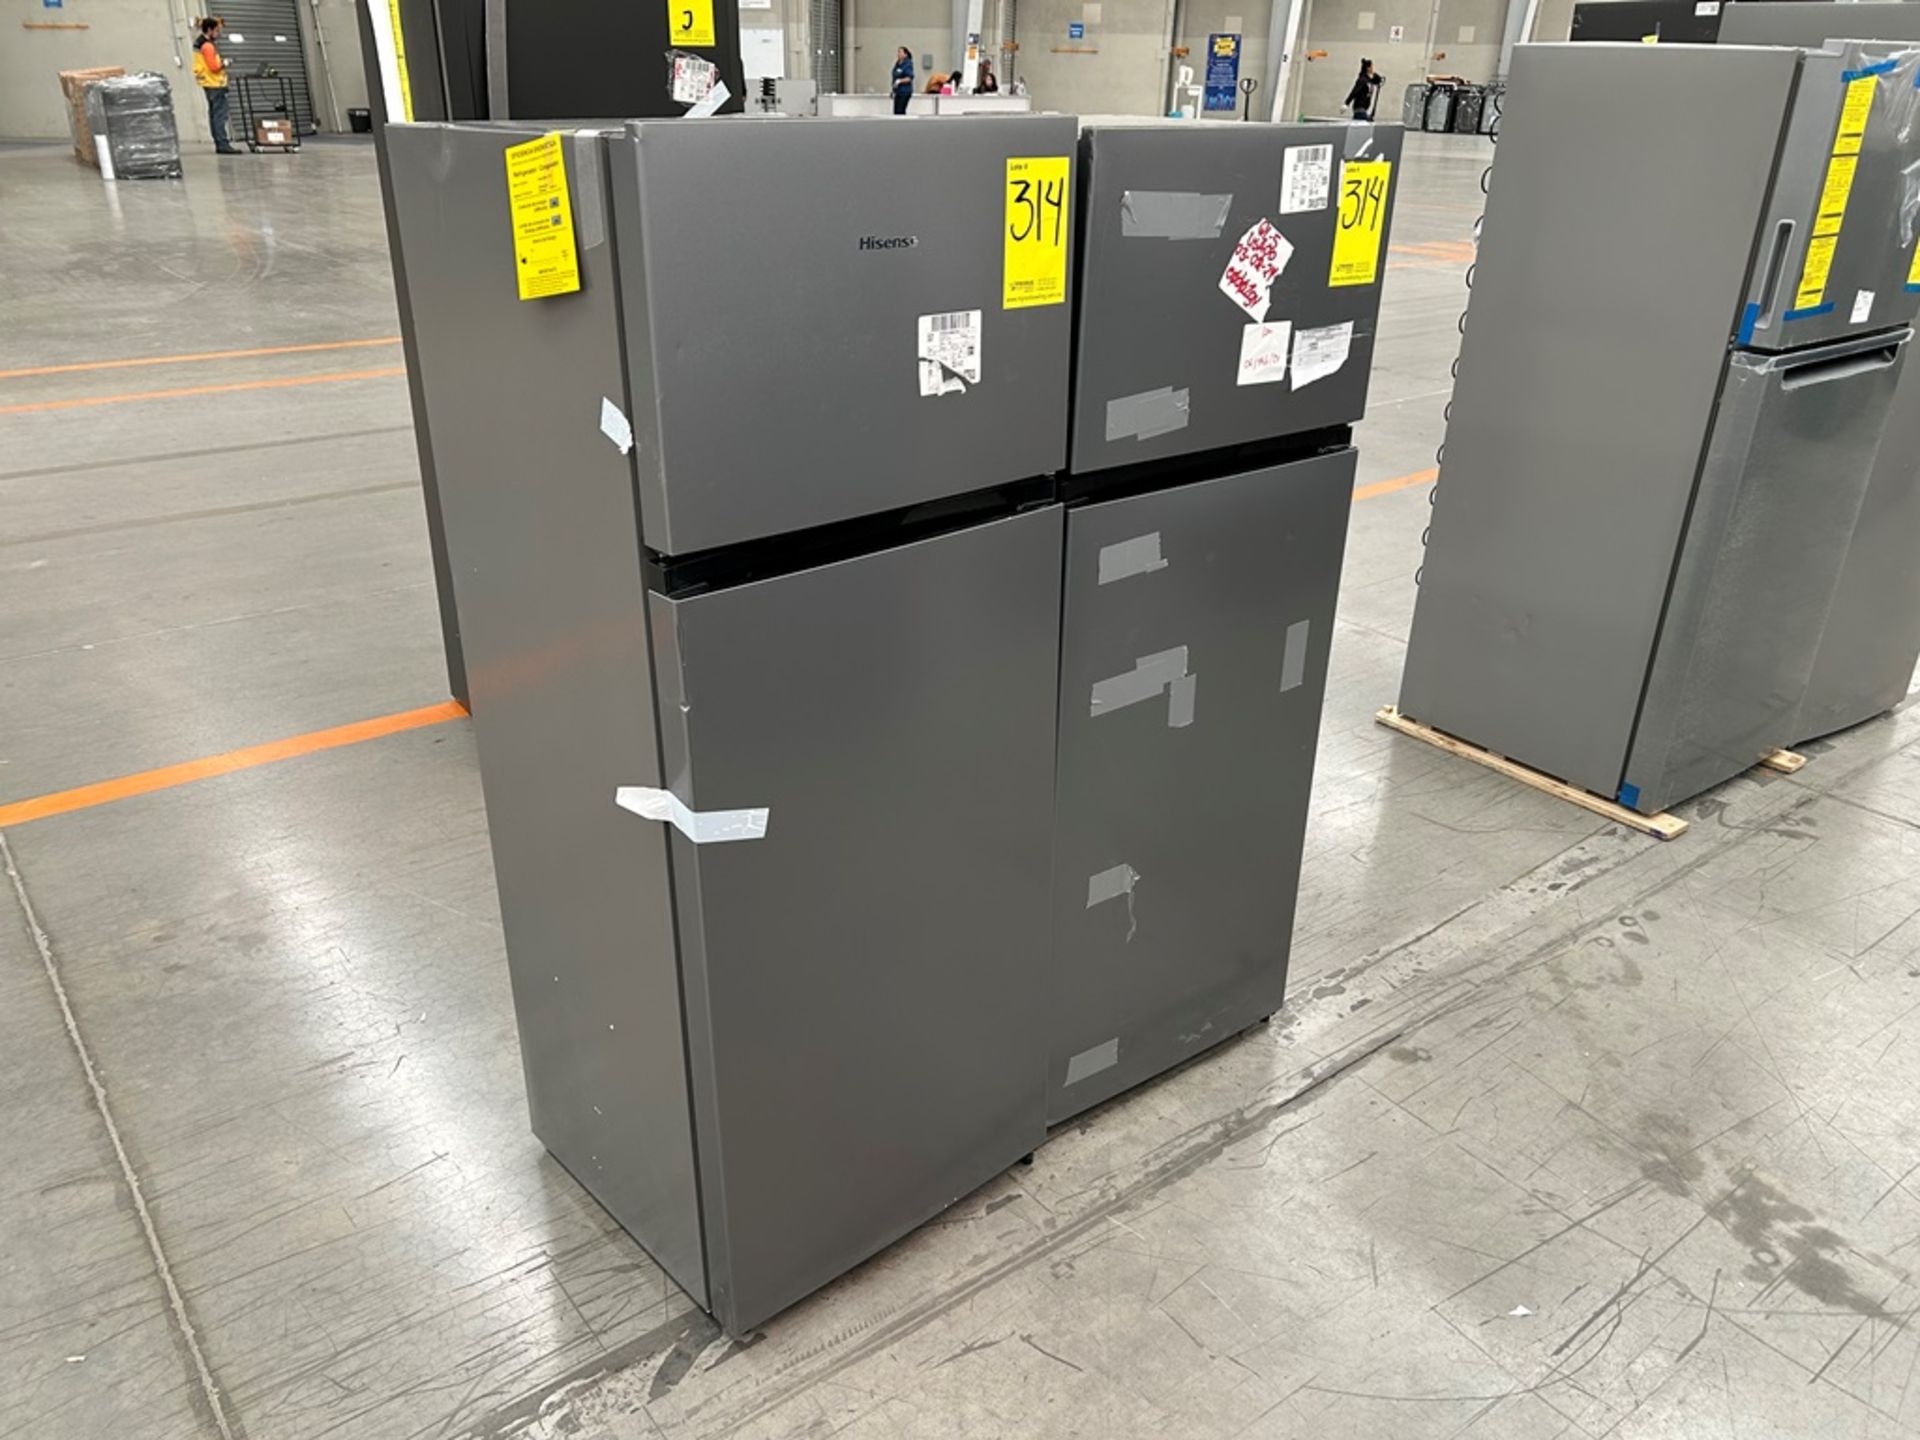 Lote de 2 Refrigeradores, contiene: 1 Refrigerador Marca HISENSE, Modelo RT80D6AGX Serie VP20148, C - Image 3 of 6